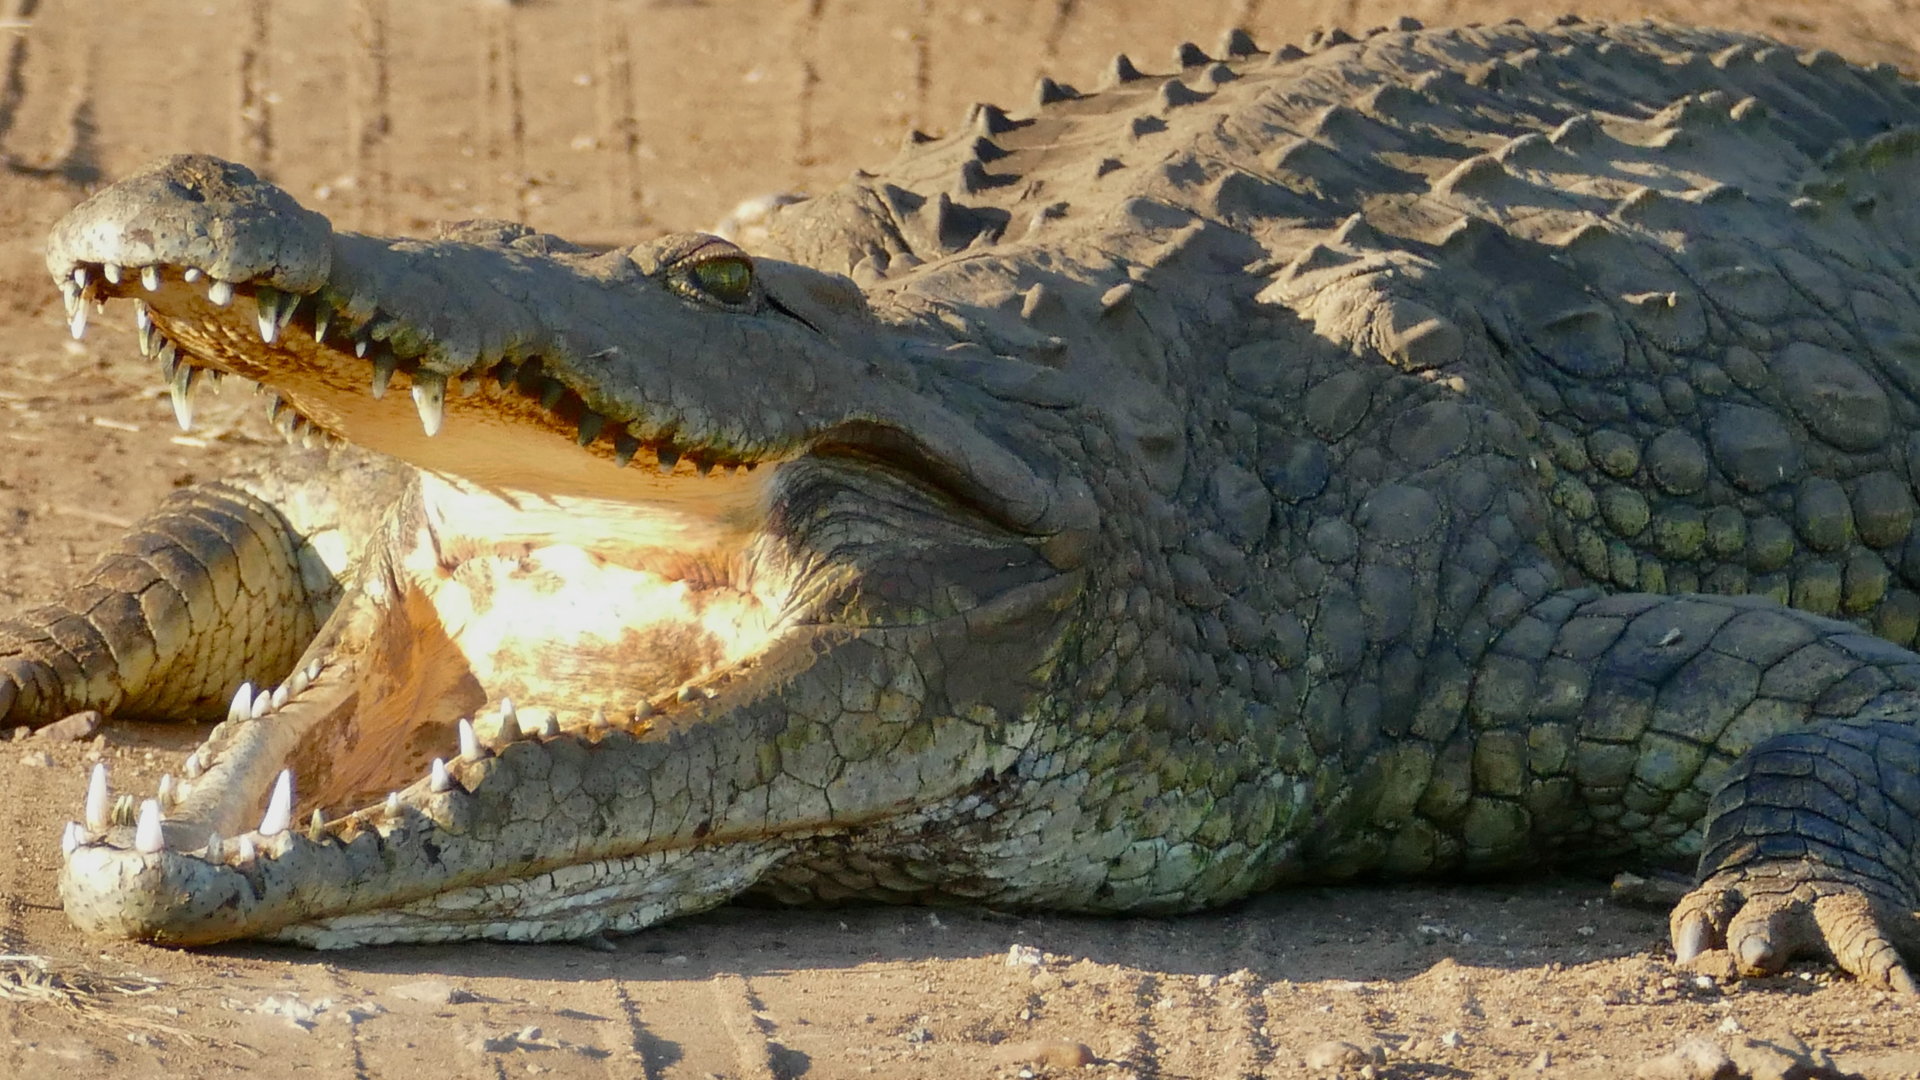 Krugersdorp crocodiles missing